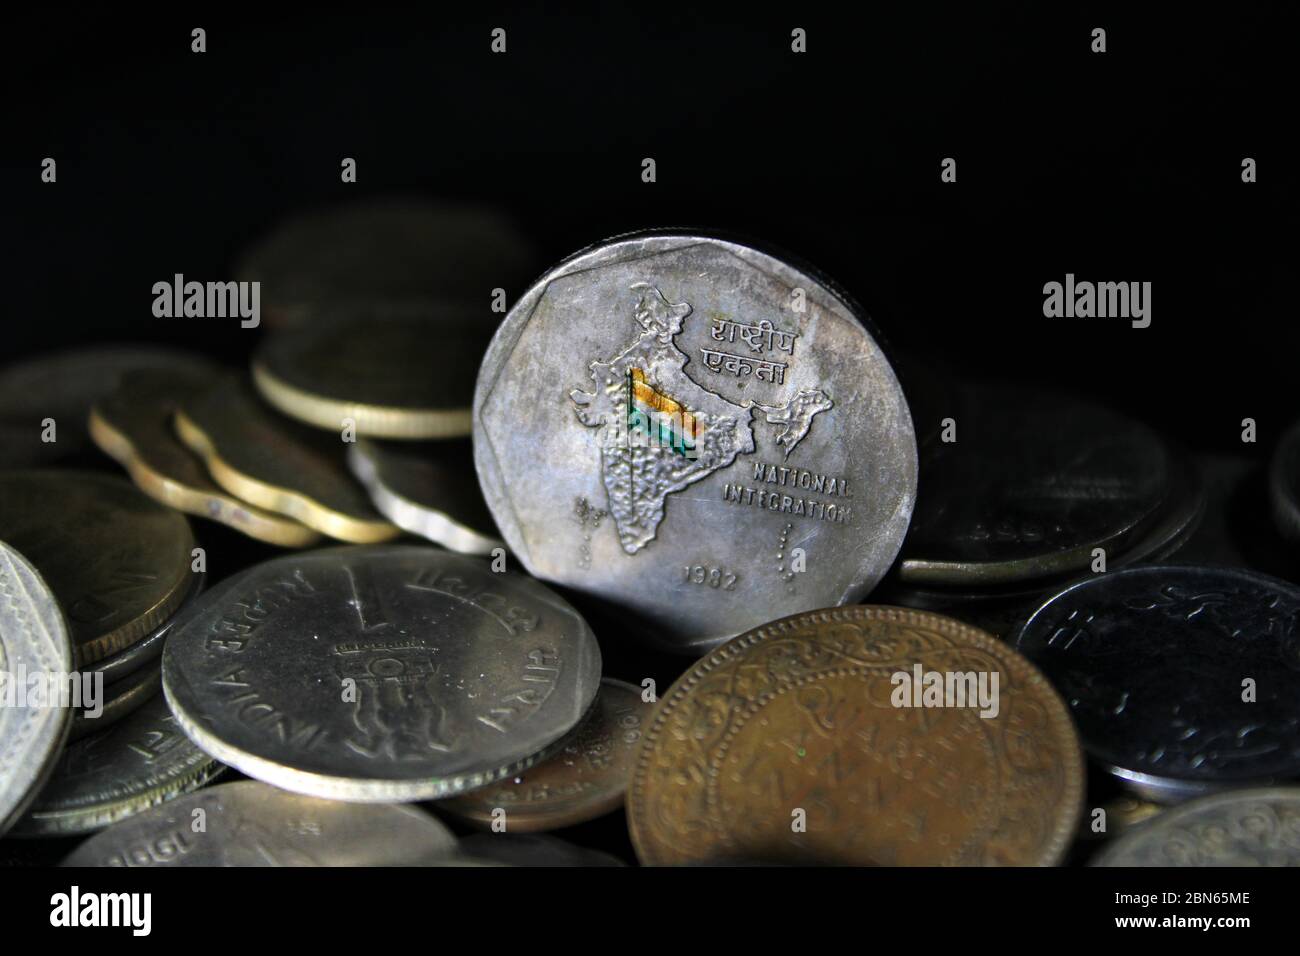 Zwei Rupien-Münzen Indiens isoliert auf schwarzem Hintergrund. Karte von Indien als Symbol der indischen nationalen Integration in den indischen Münzen dargestellt. Stockfoto